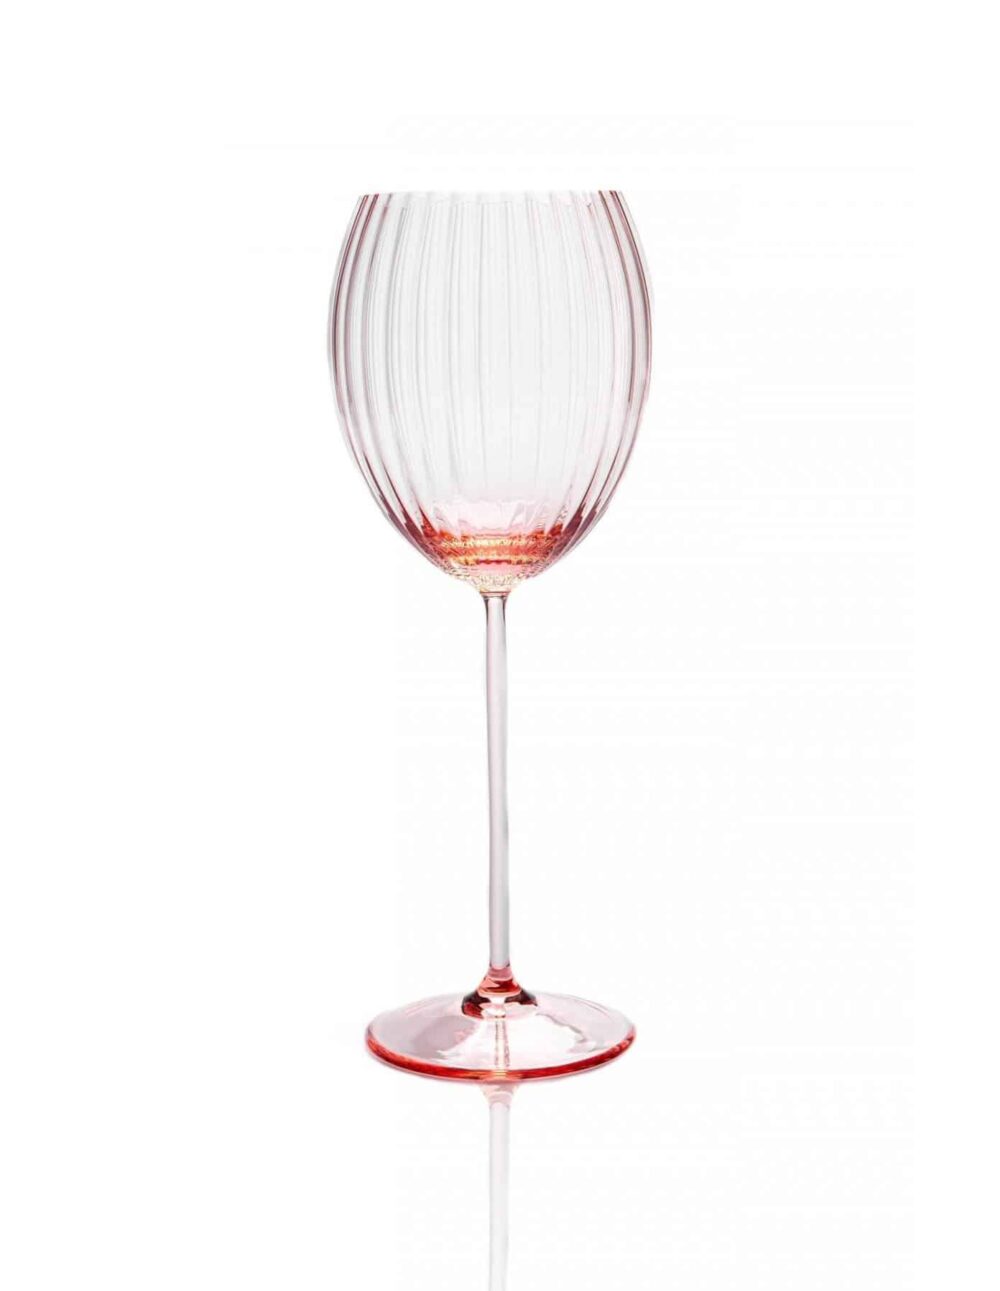 lyon ovalt vinglas, lyserøde vinglas, bordækning, mundblæst glas, handblown wineglass, bordækning, glas